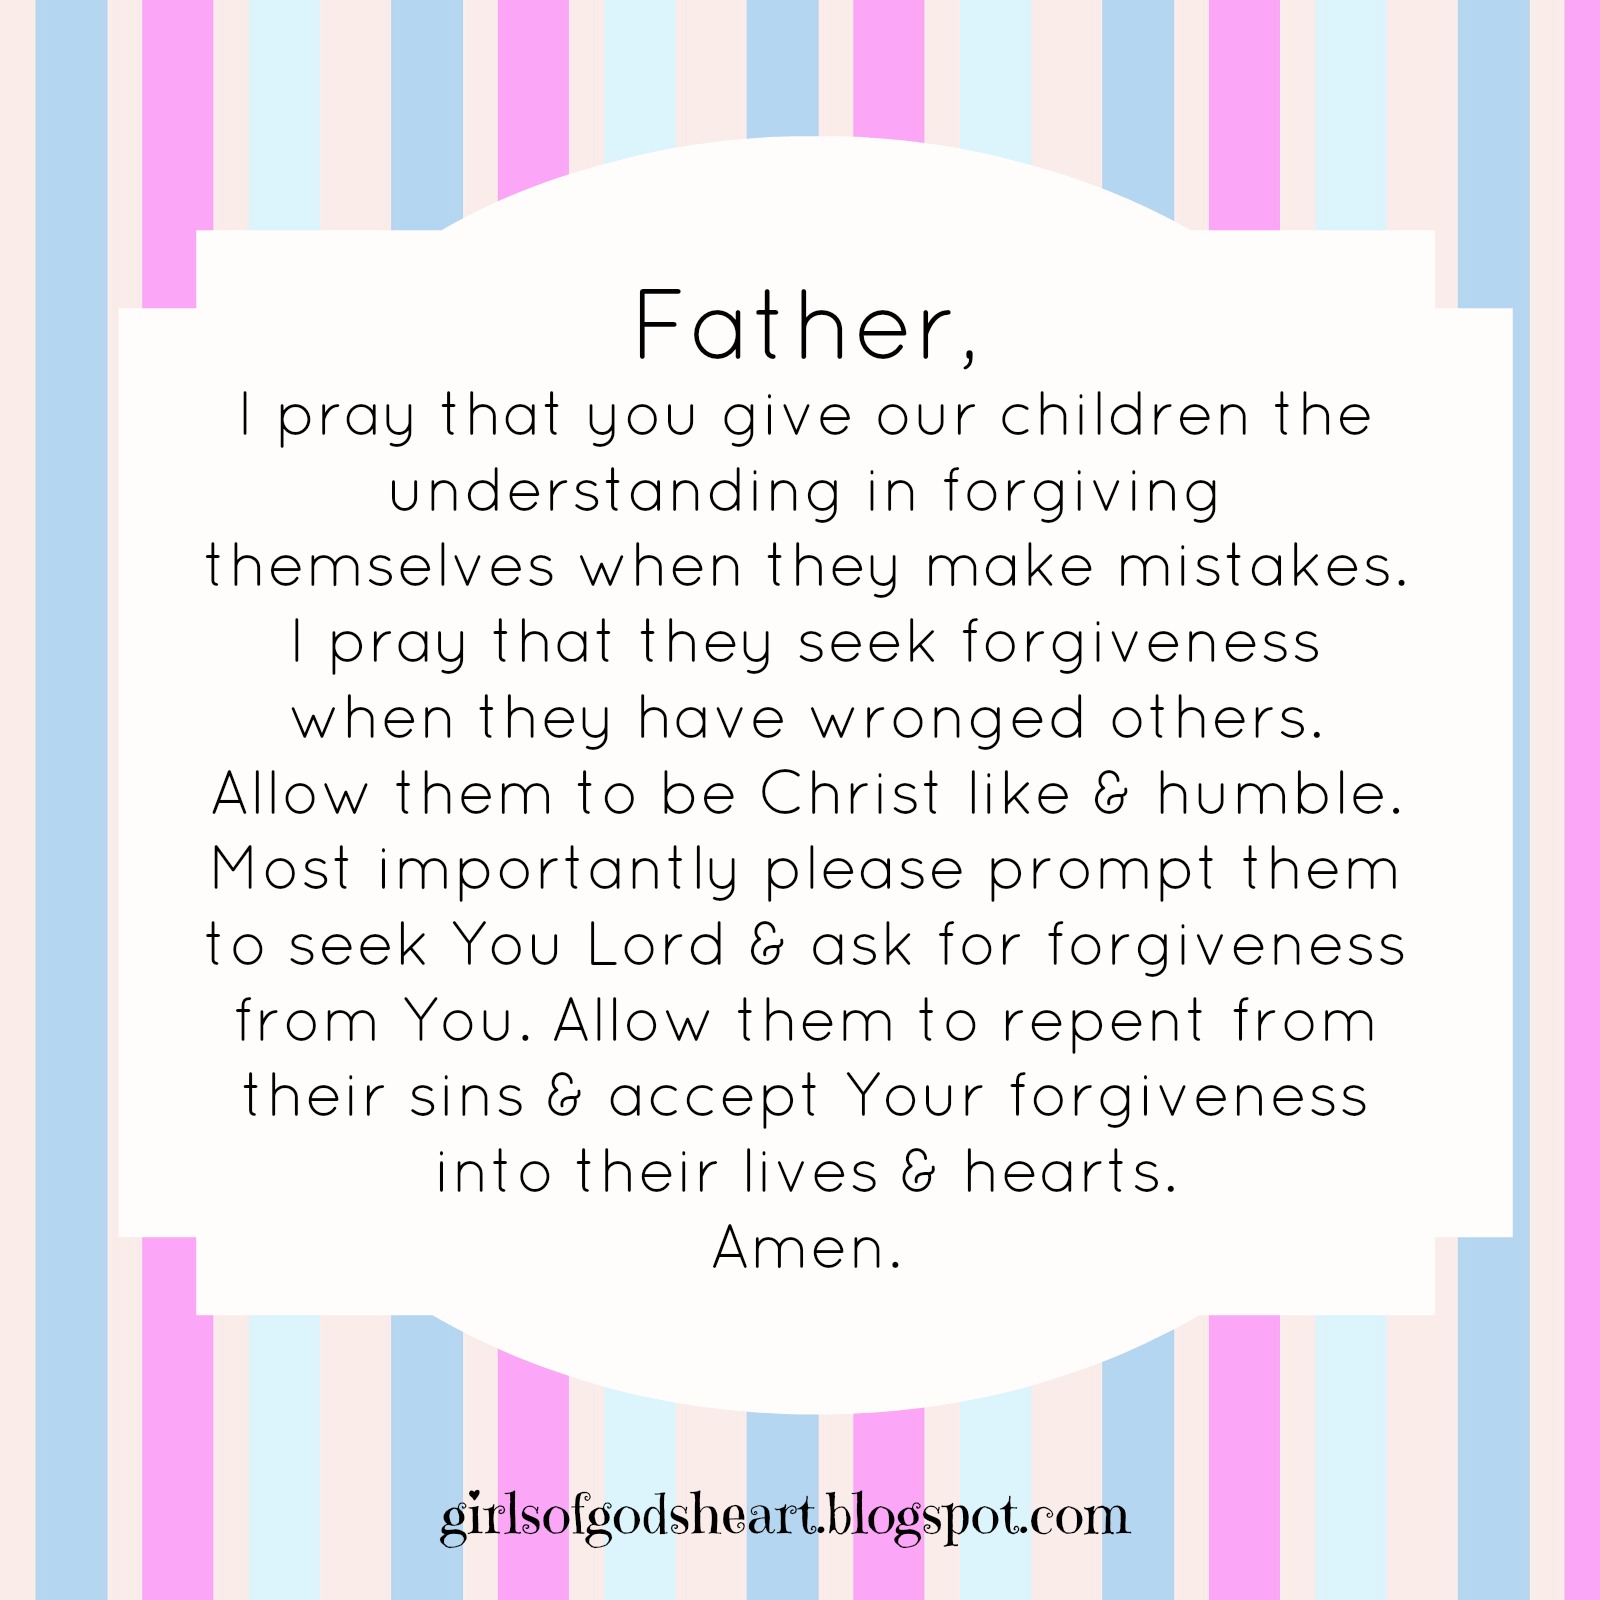 Girls of God's Heart: Mothers Prayer: Forgiving themselves